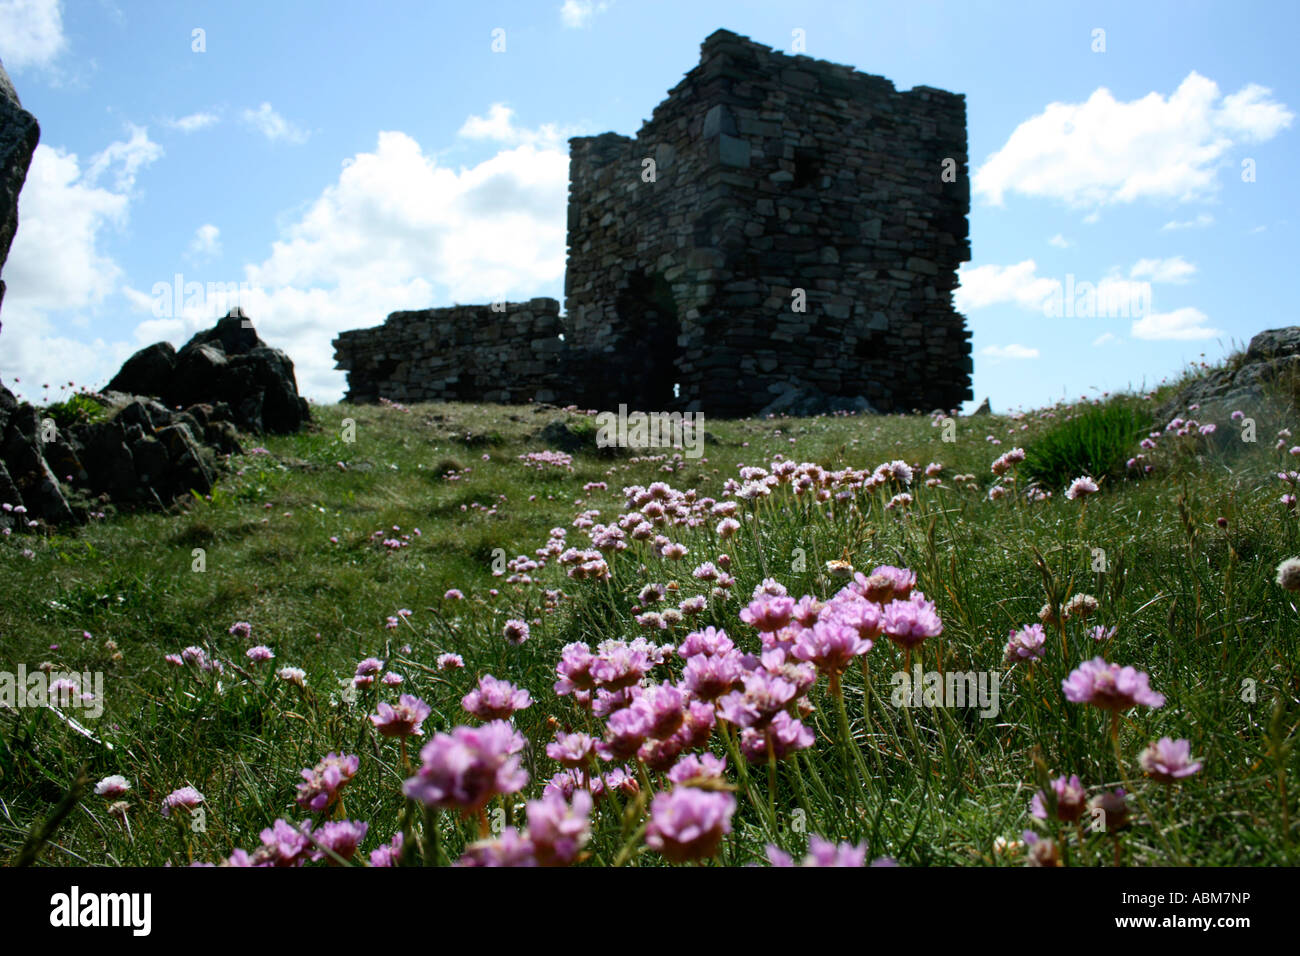 Ruines du château, Carraickabraghy Friar's Rock, l'Atlantique, l'île de Doagh Co Donegal, Irlande Banque D'Images